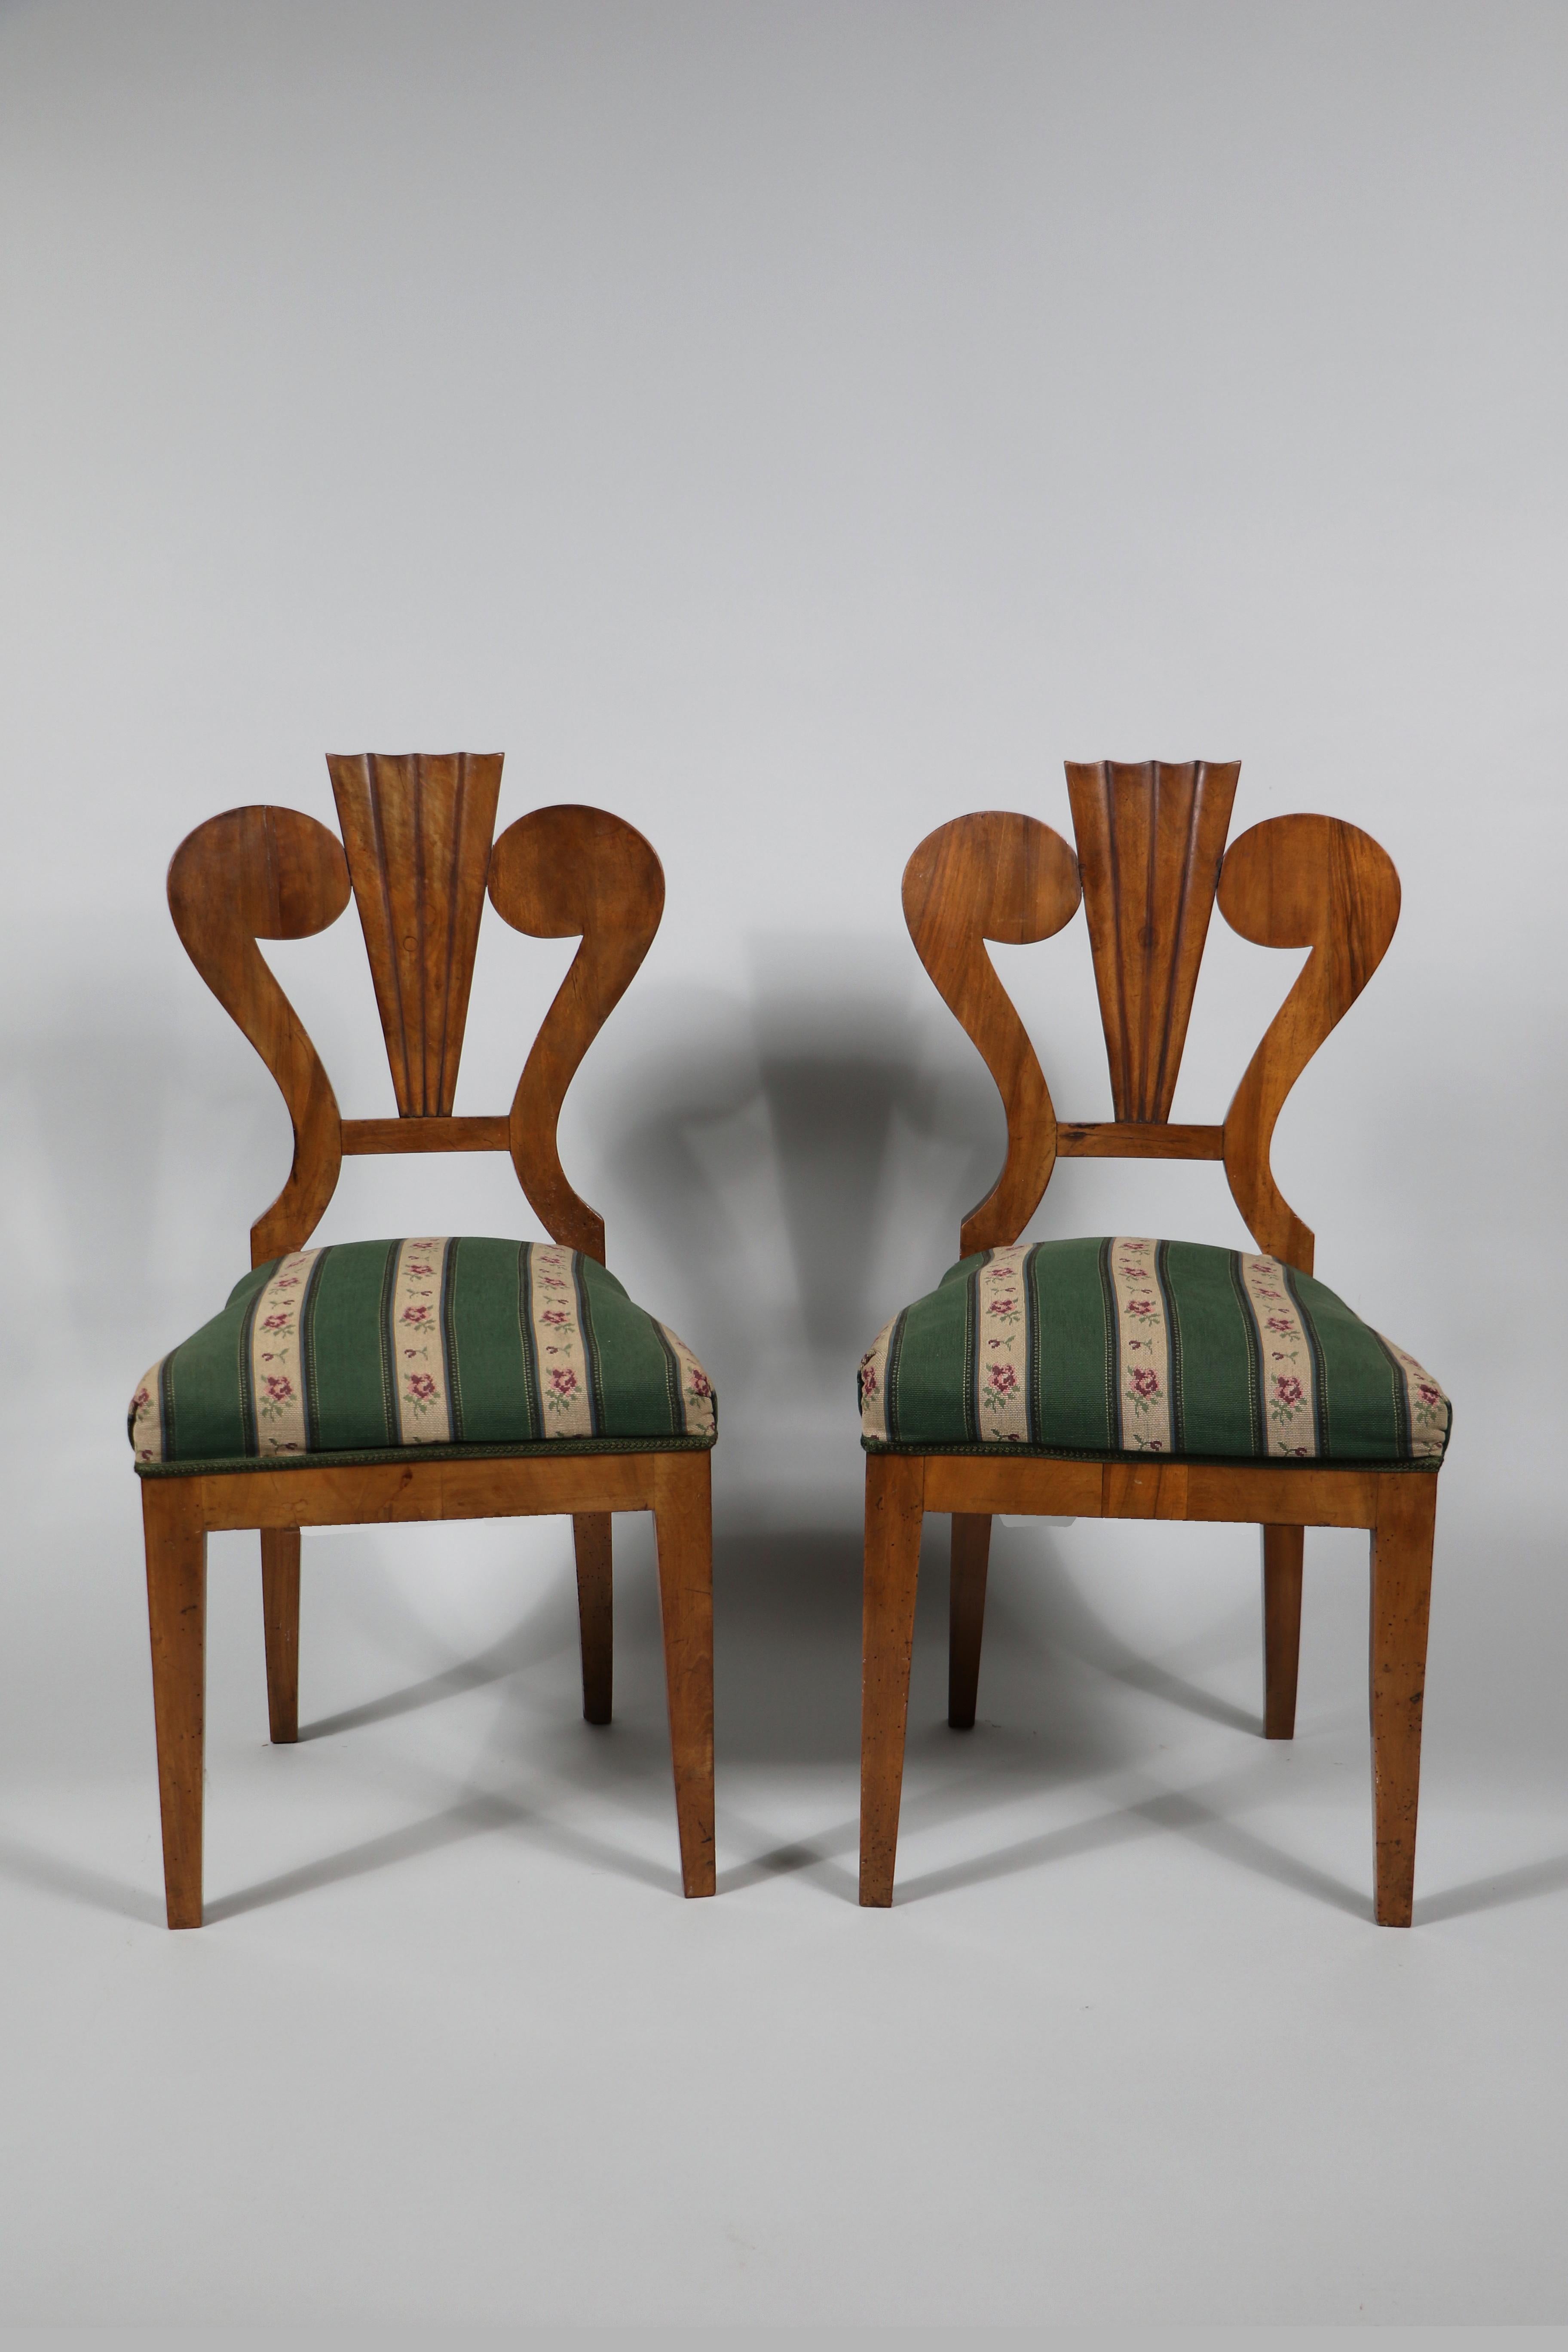 Hallo,
Diese schönen und seltenen Biedermeier-Stühle wurden um 1825 in Wien hergestellt.

Die Stücke des Wiener Biedermeier zeichnen sich durch ihre raffinierten Proportionen, ihr seltenes und raffiniertes Design und ihre exzellente Handwerkskunst